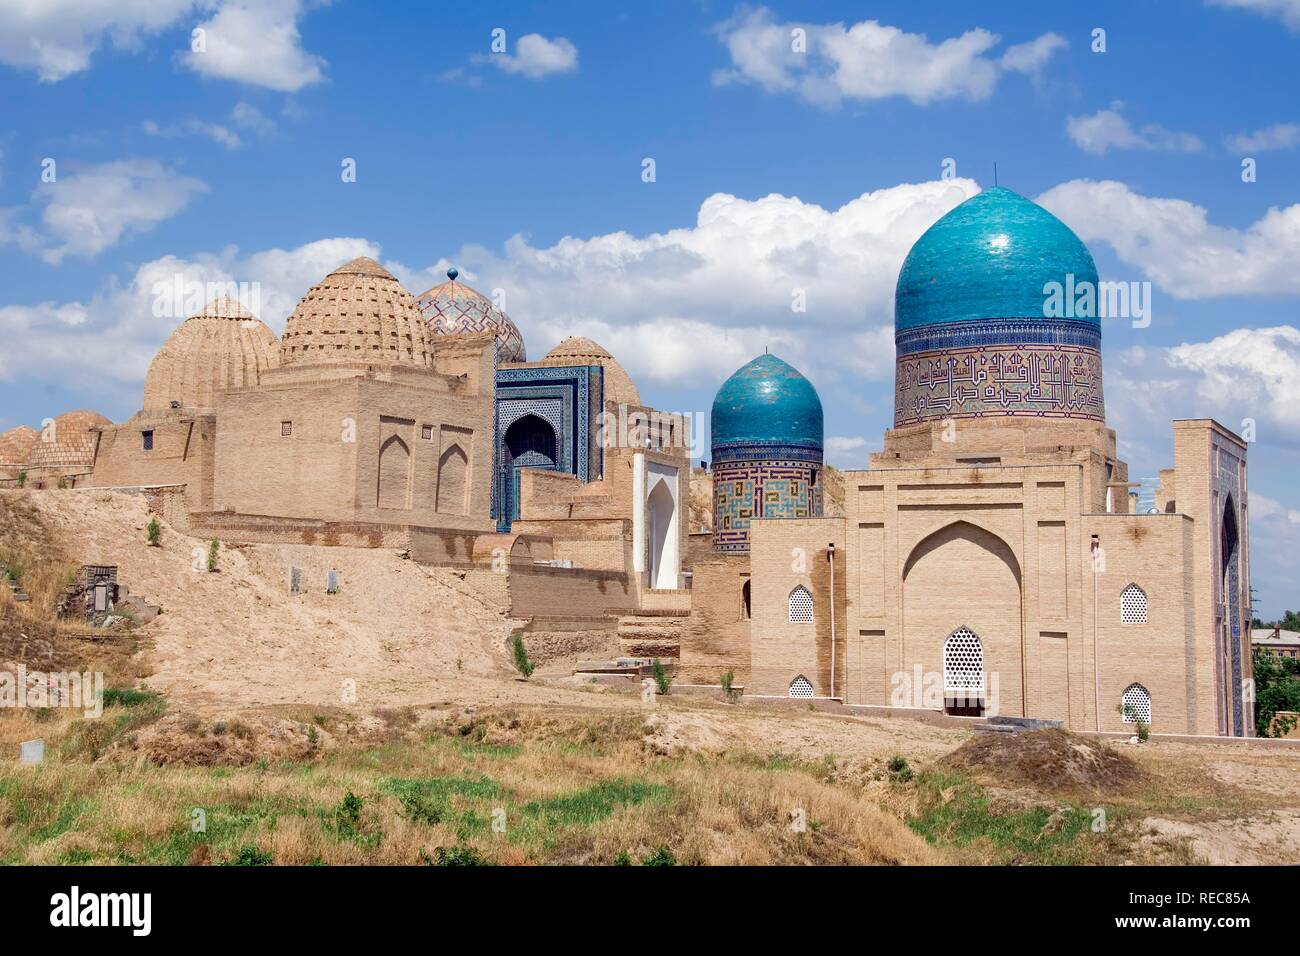 Kasisade Rumi Mausoleum, Shahr-I-Zindah or Shahi Sinda necropolis, Samarkand, UNESCO World Heritage Site, Uzbekistan Stock Photo